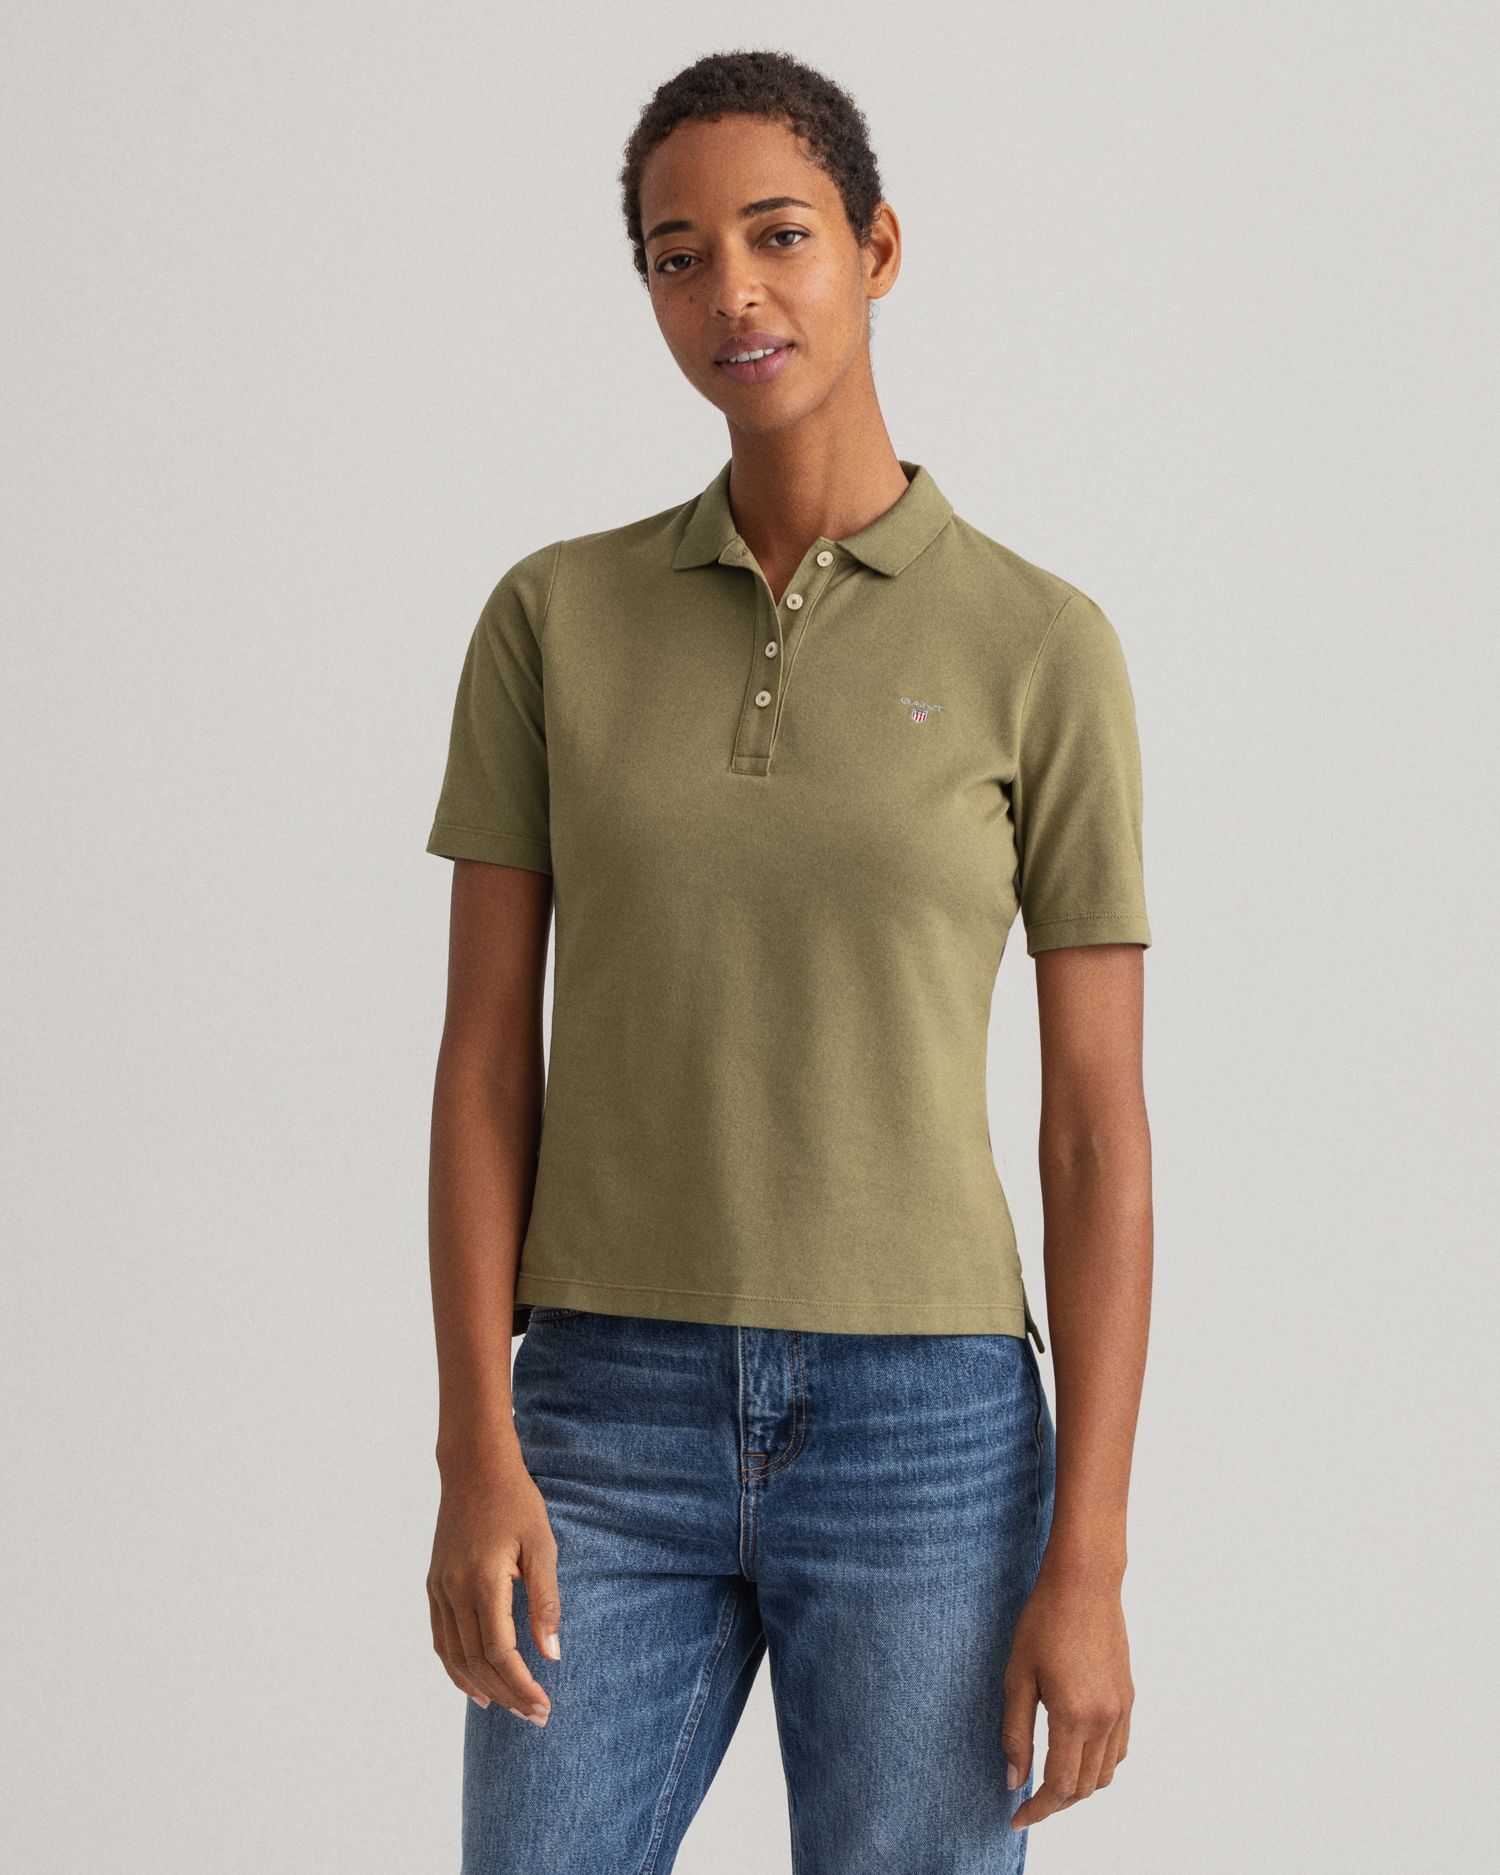 割引クーポン毎日配布中 アティピコ メンズ ポロシャツ トップス Polo shirt Military green メンズファッション 